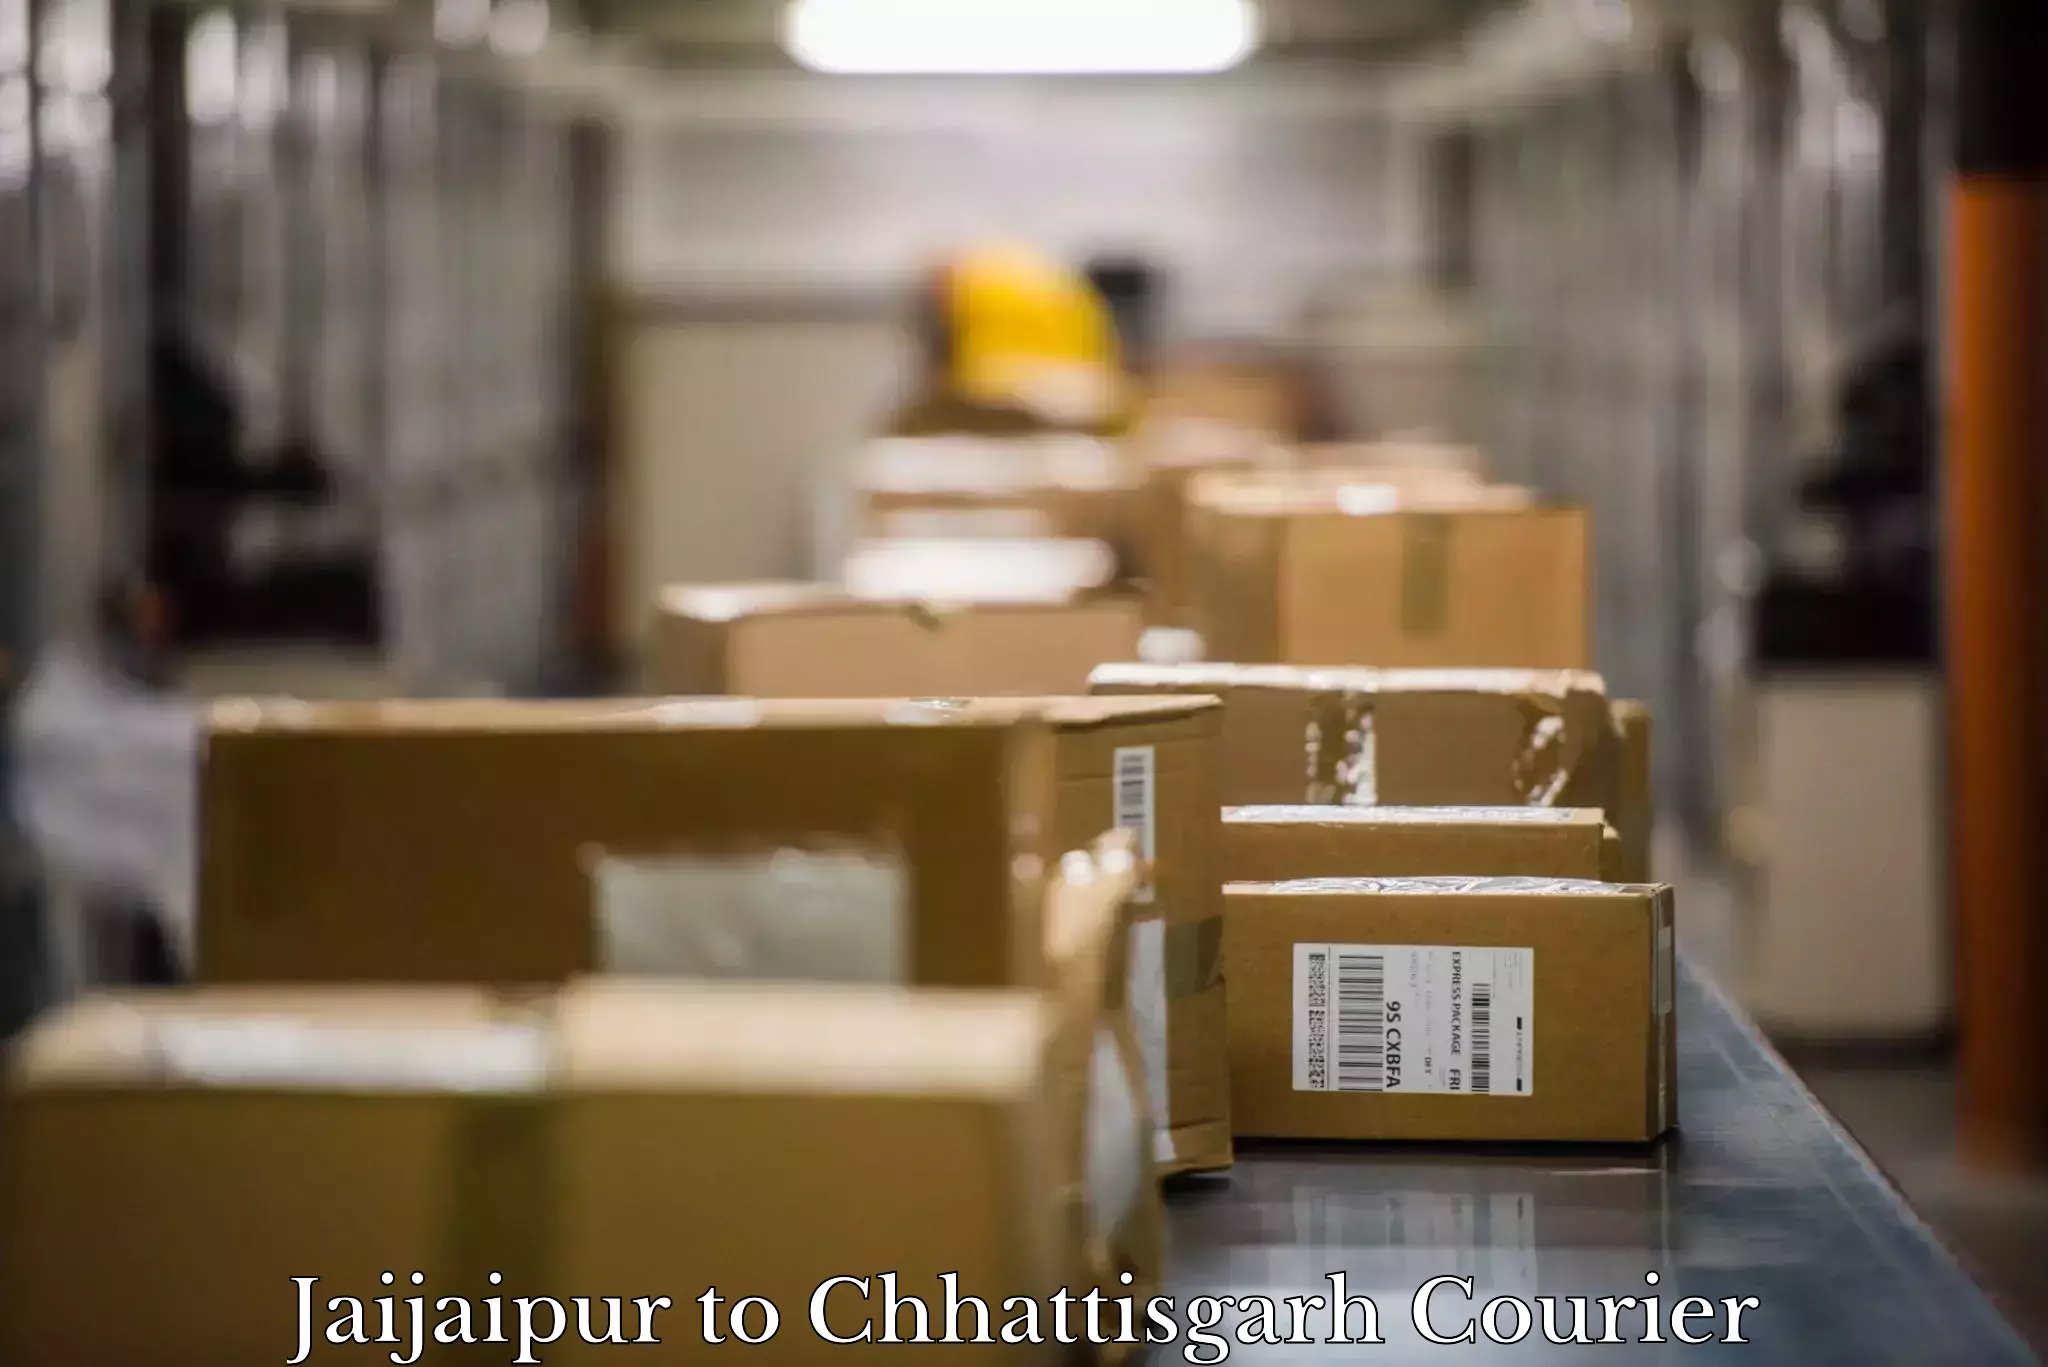 Furniture moving experts Jaijaipur to Chhattisgarh